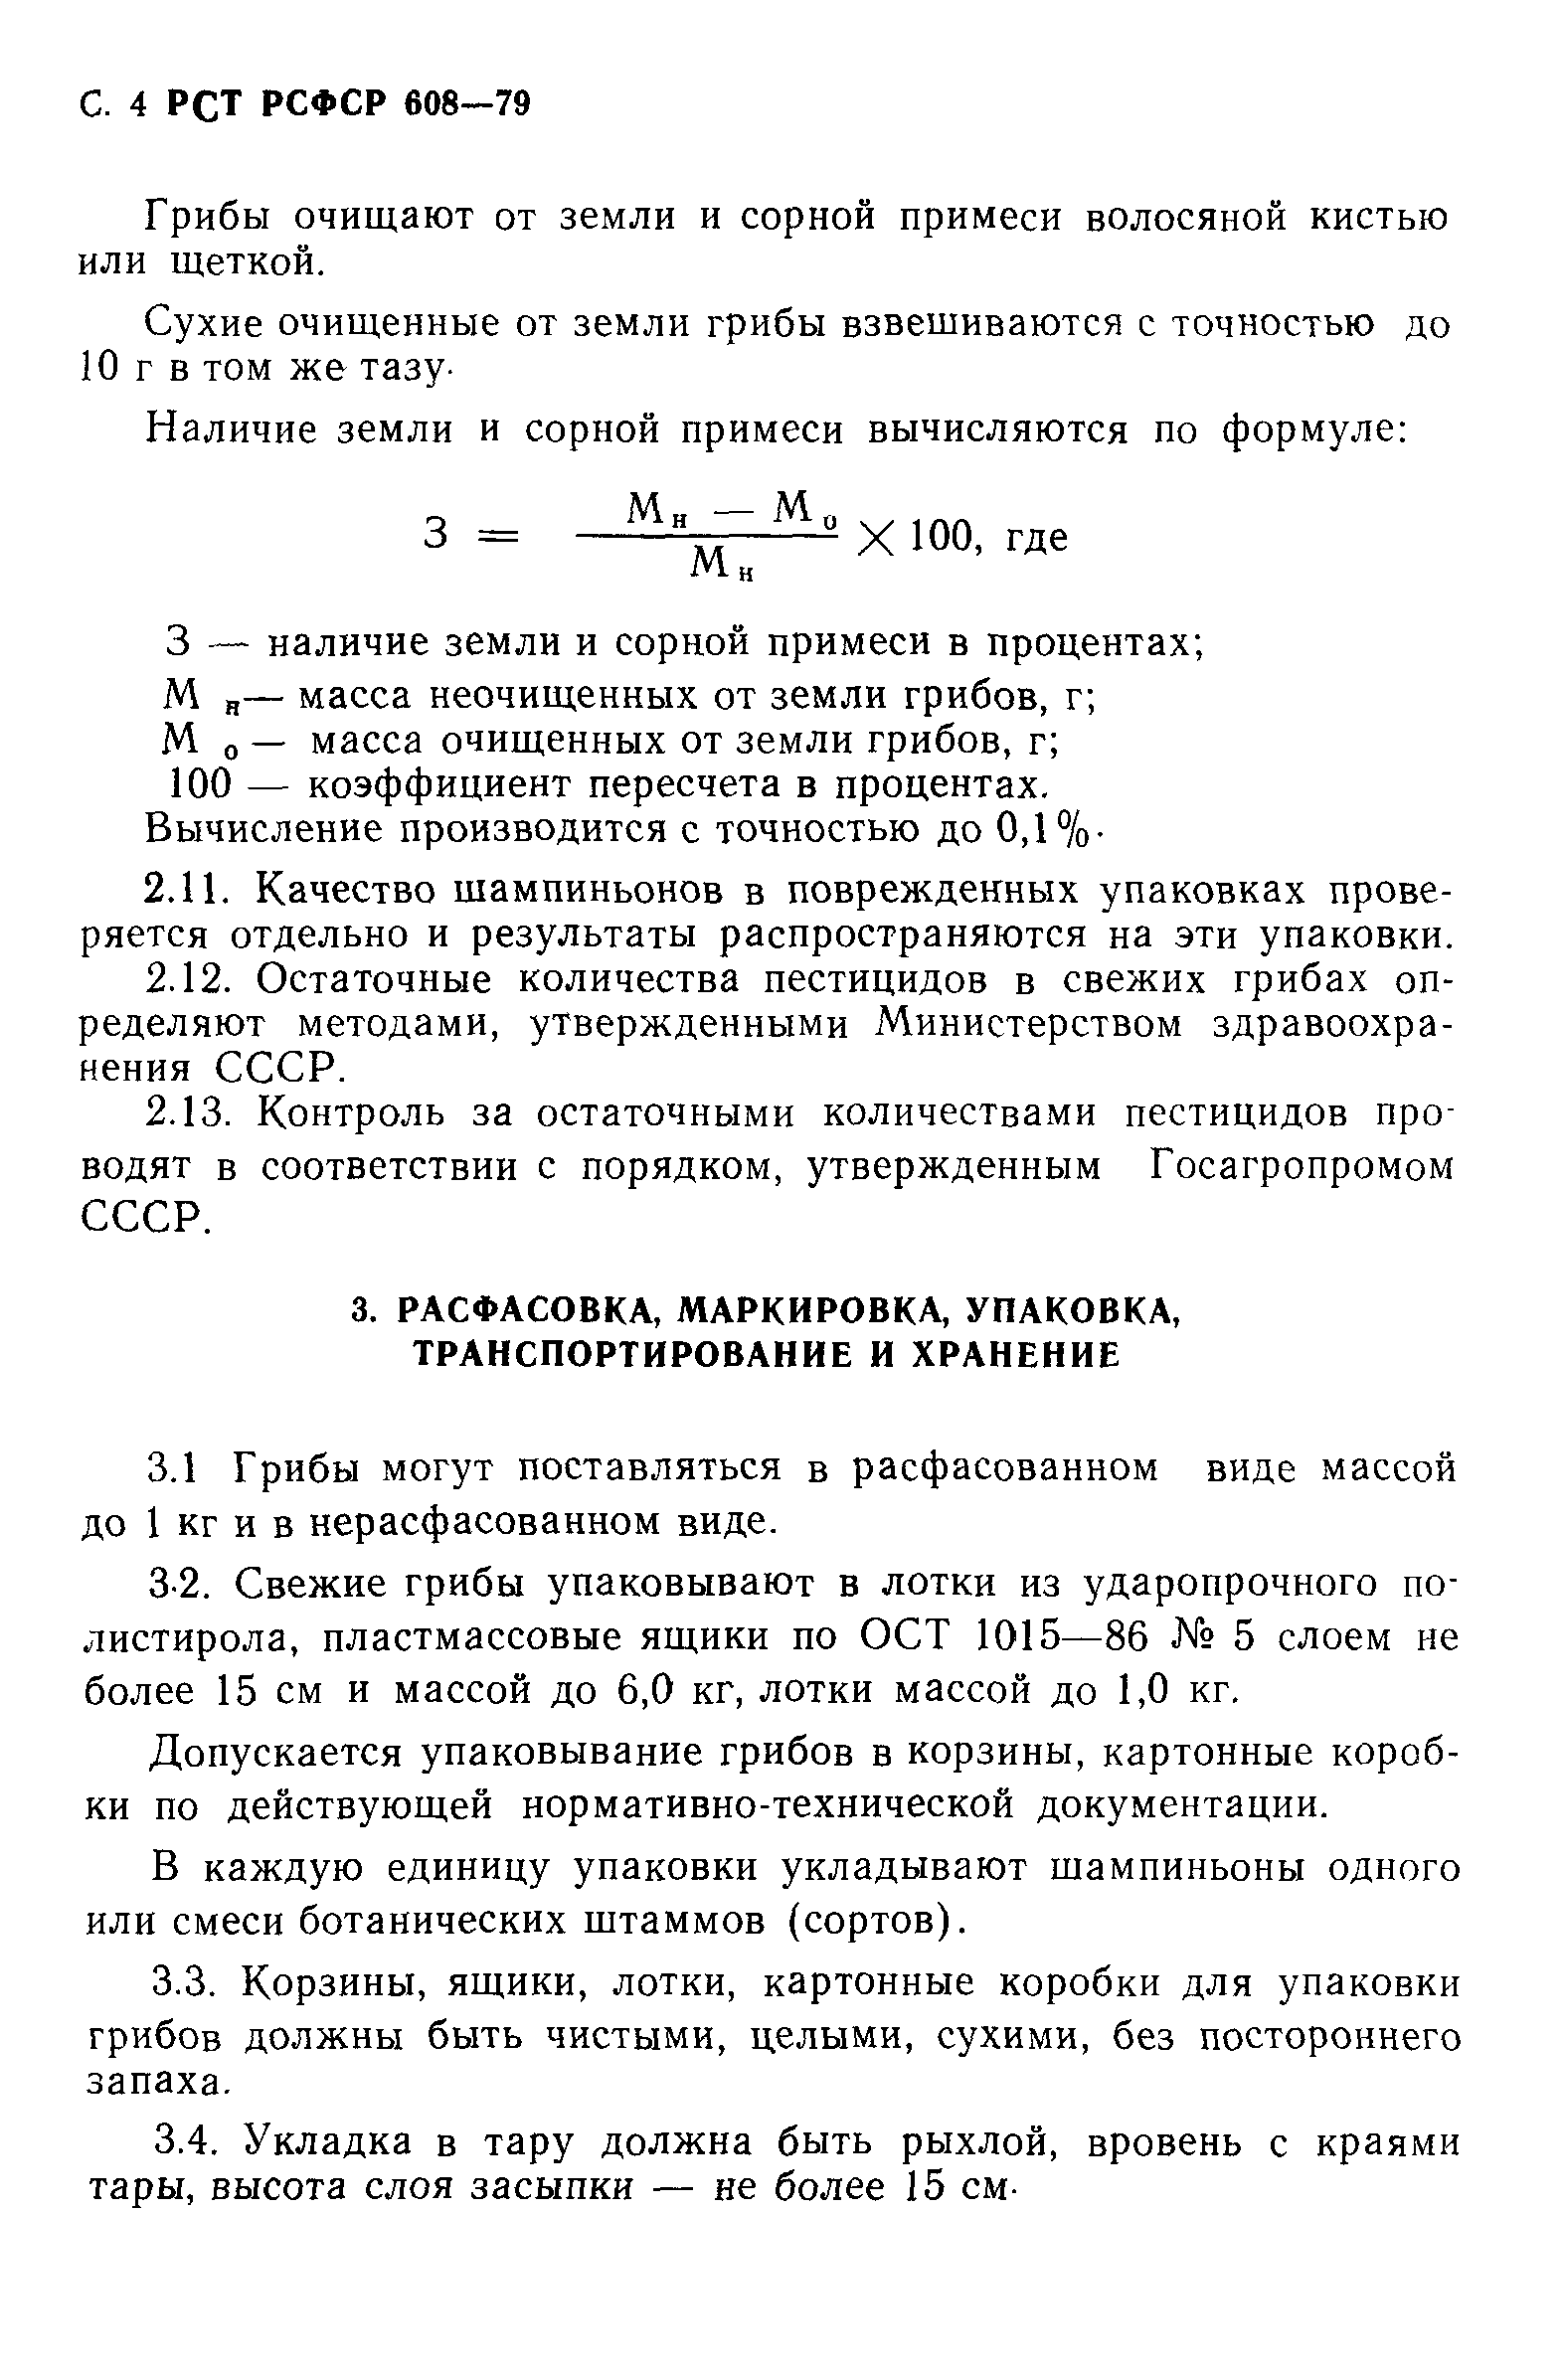 РСТ РСФСР 608-79